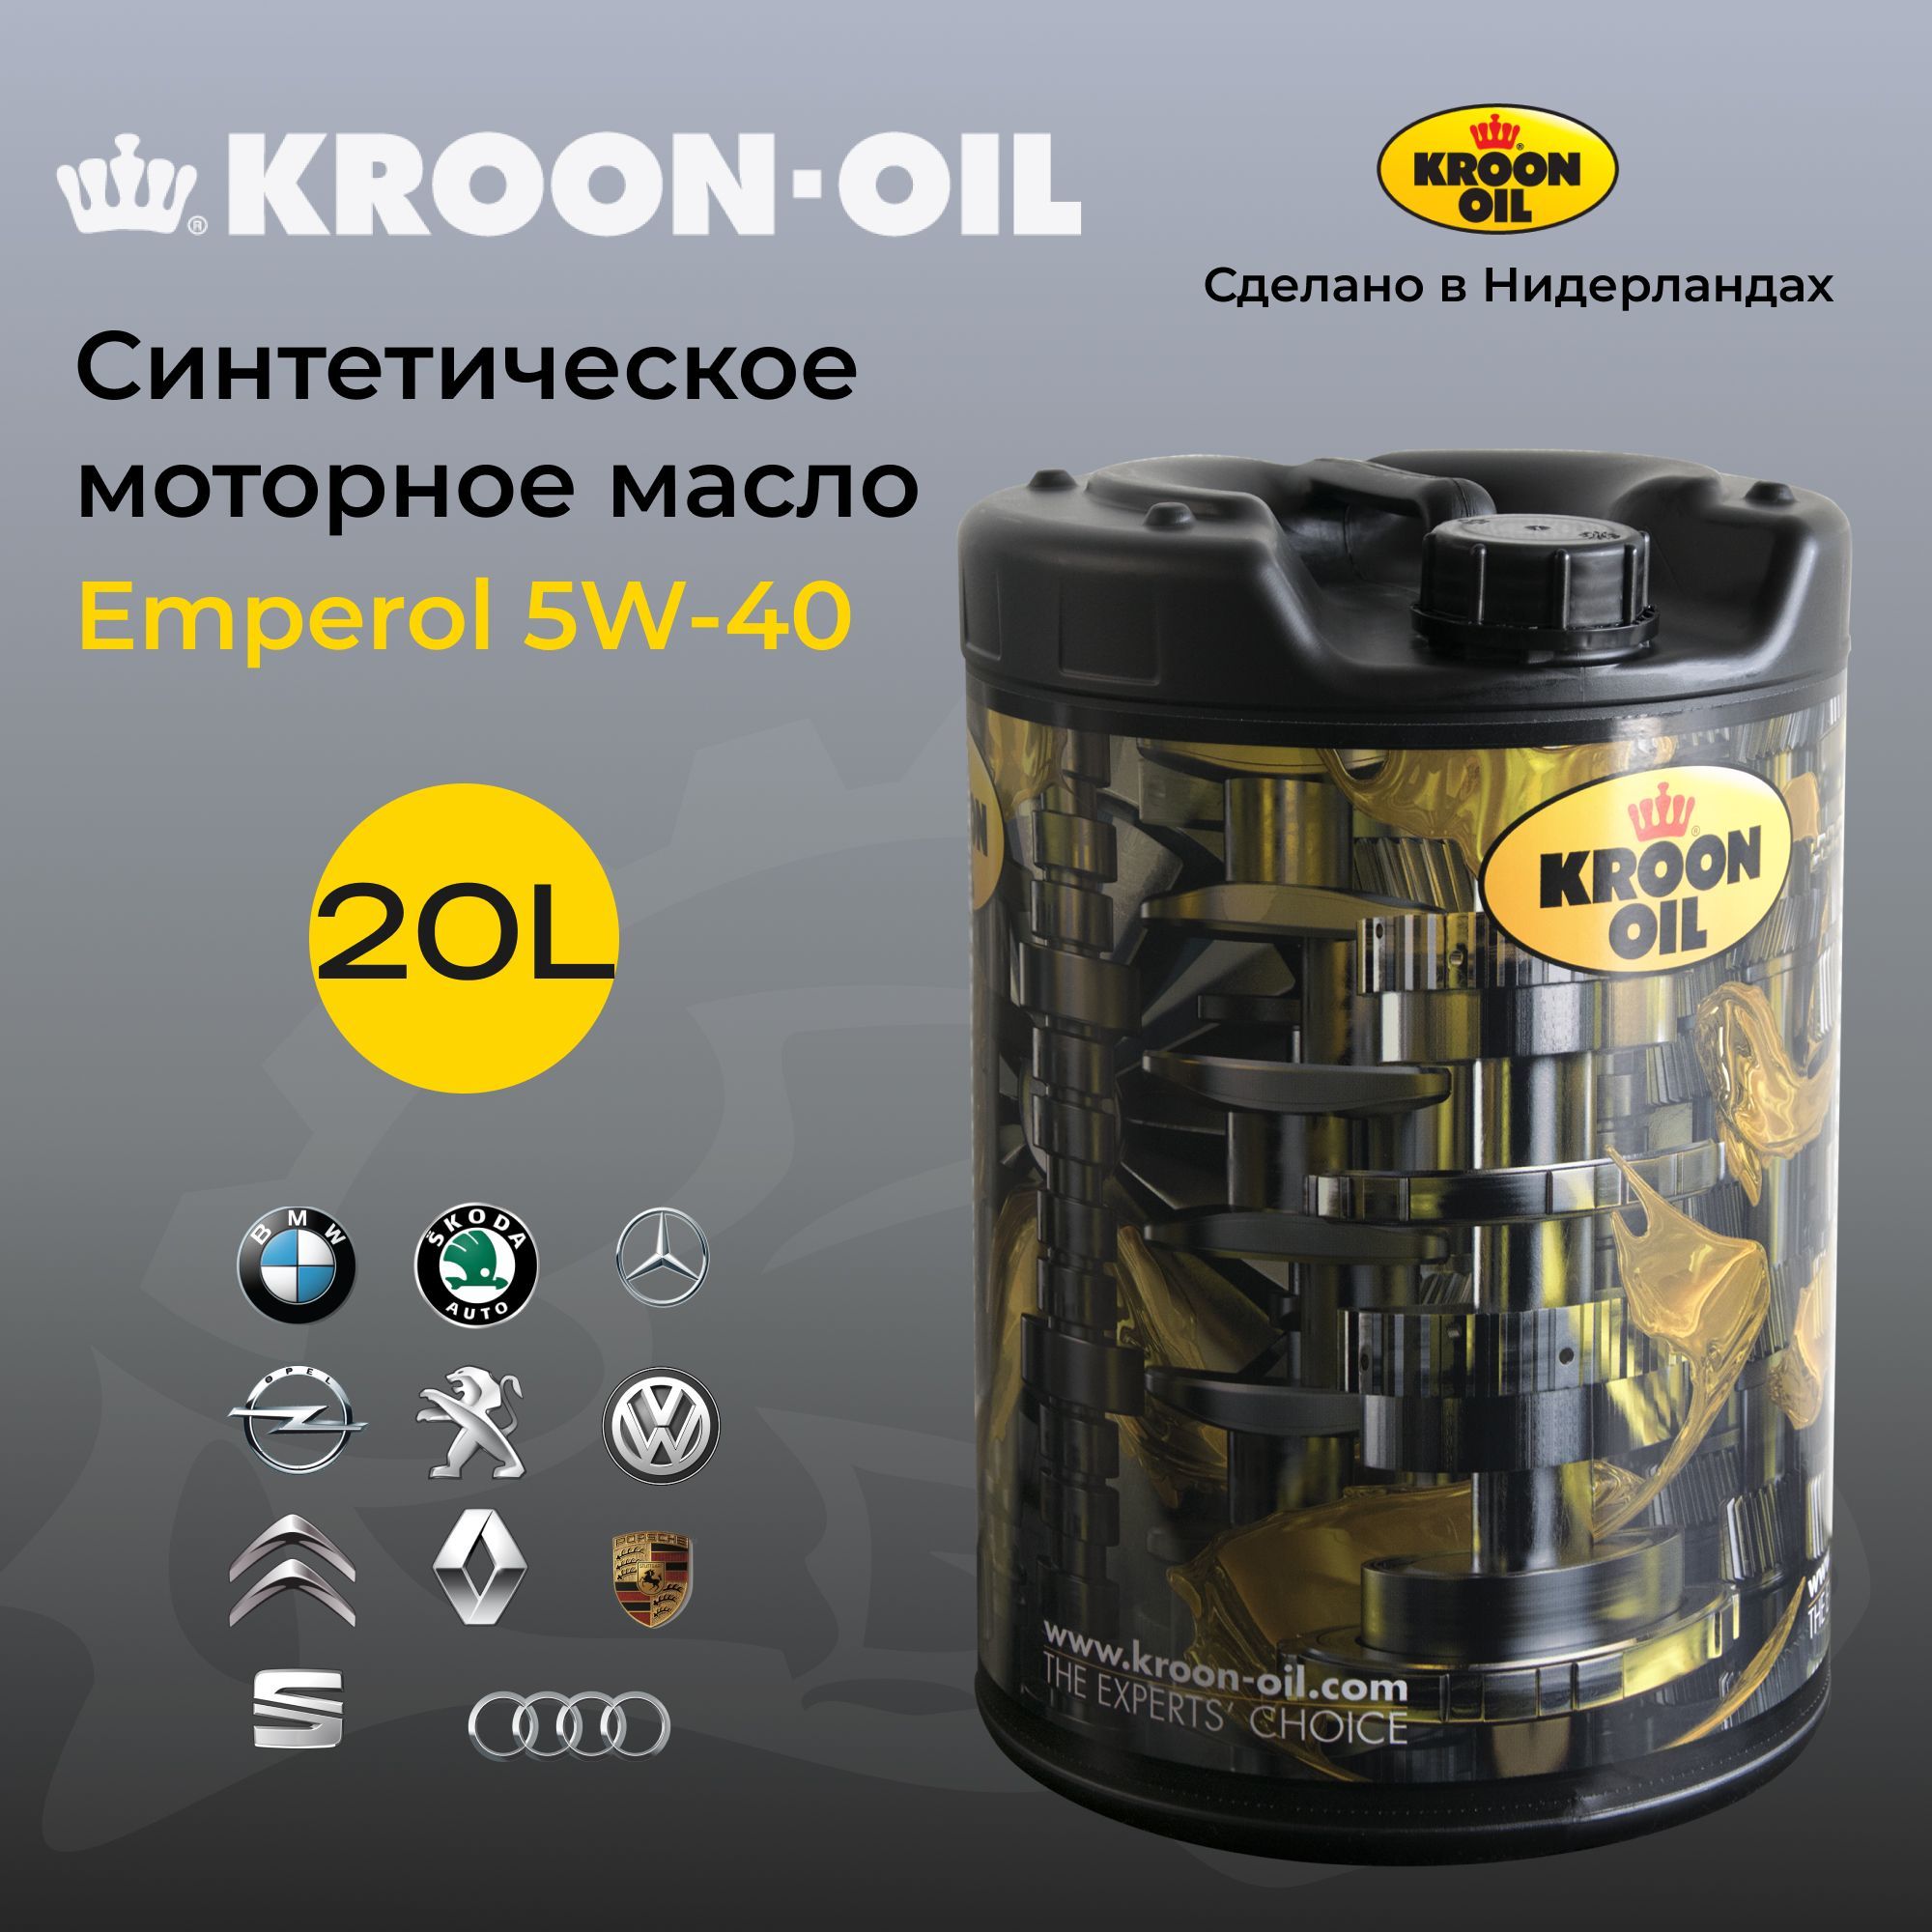 KroonOilМасломоторноеEmperol5W-40Синтетическое20л